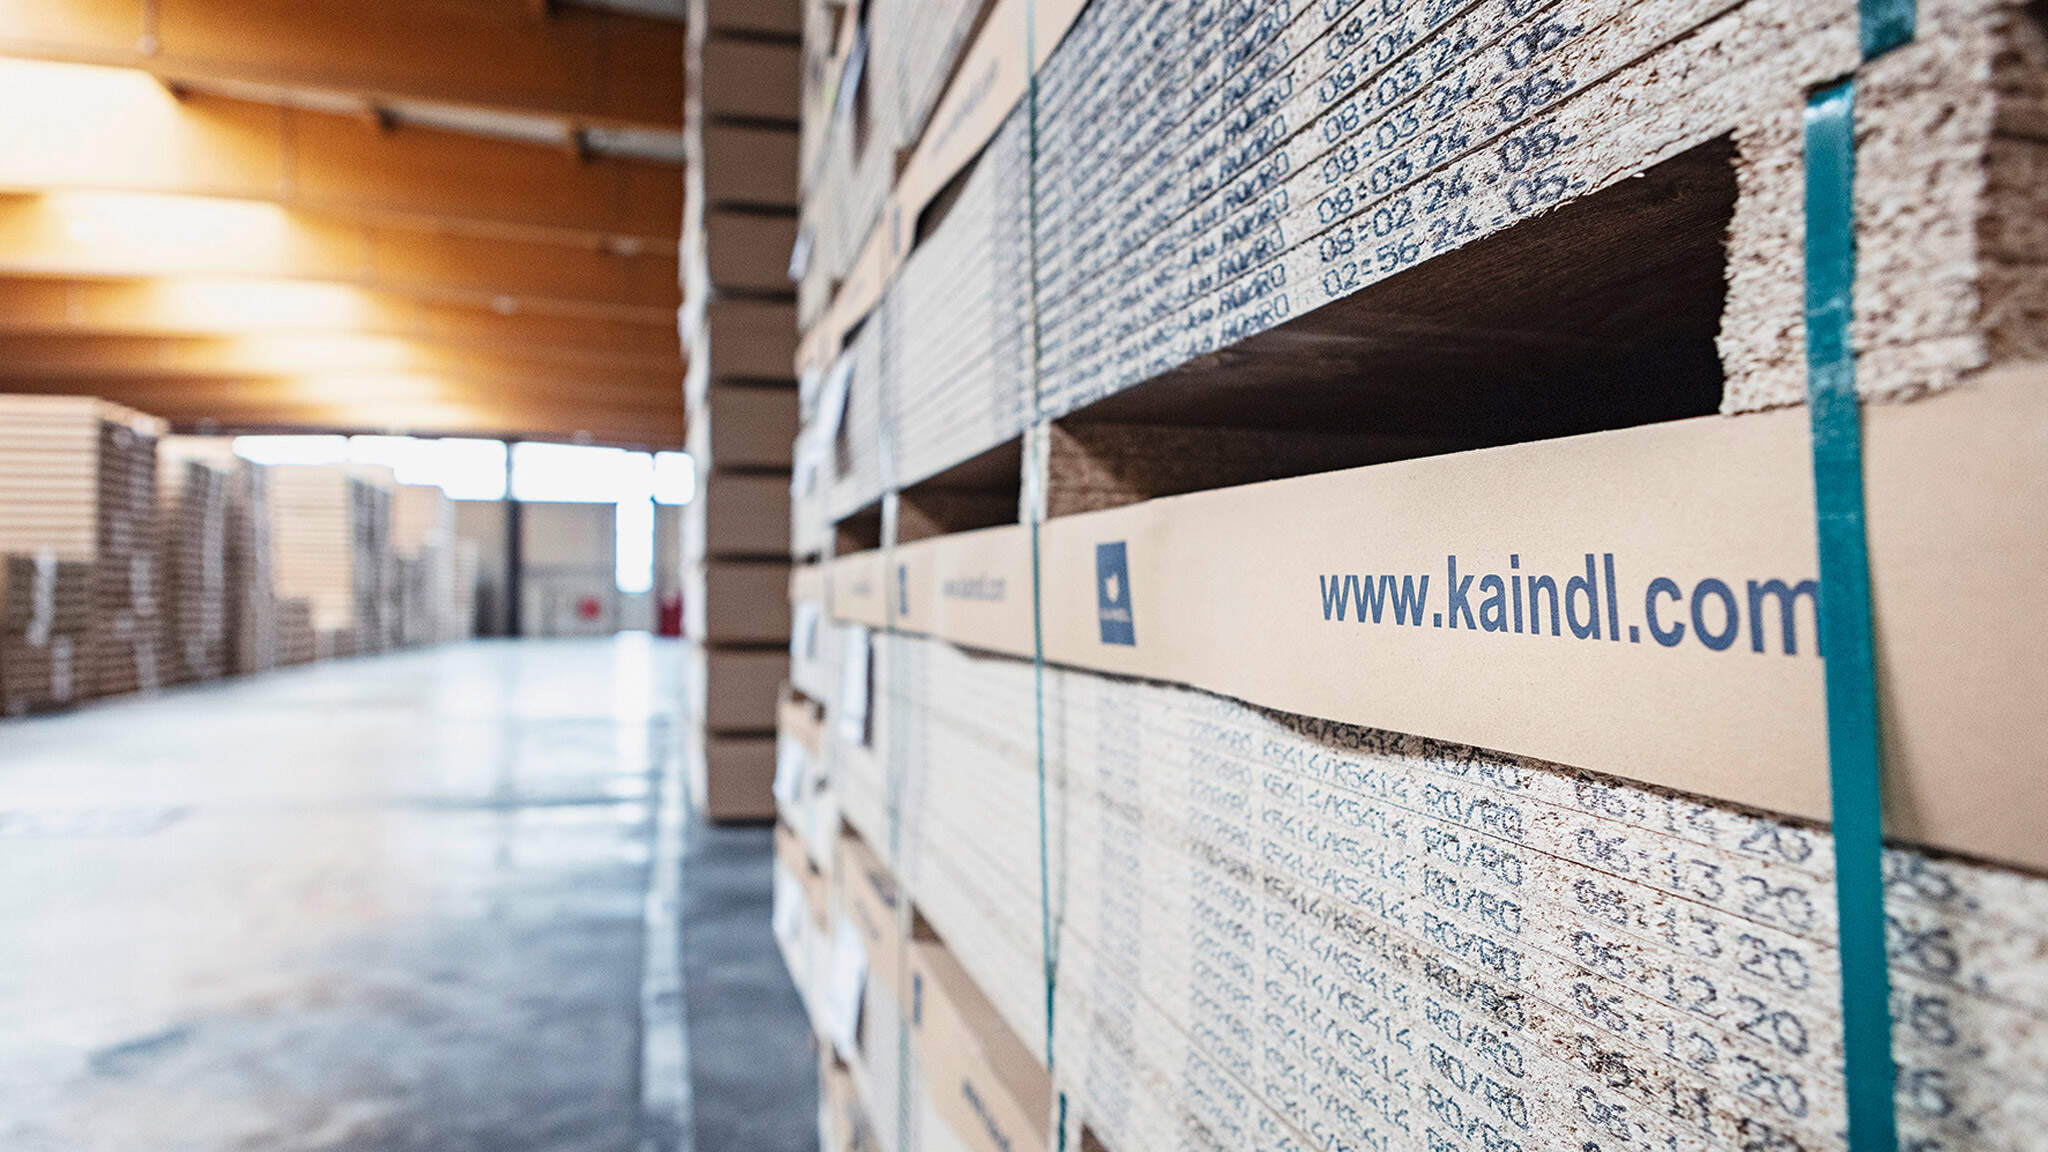 Logistics hotspot: The Kaindl megastore in Wals.